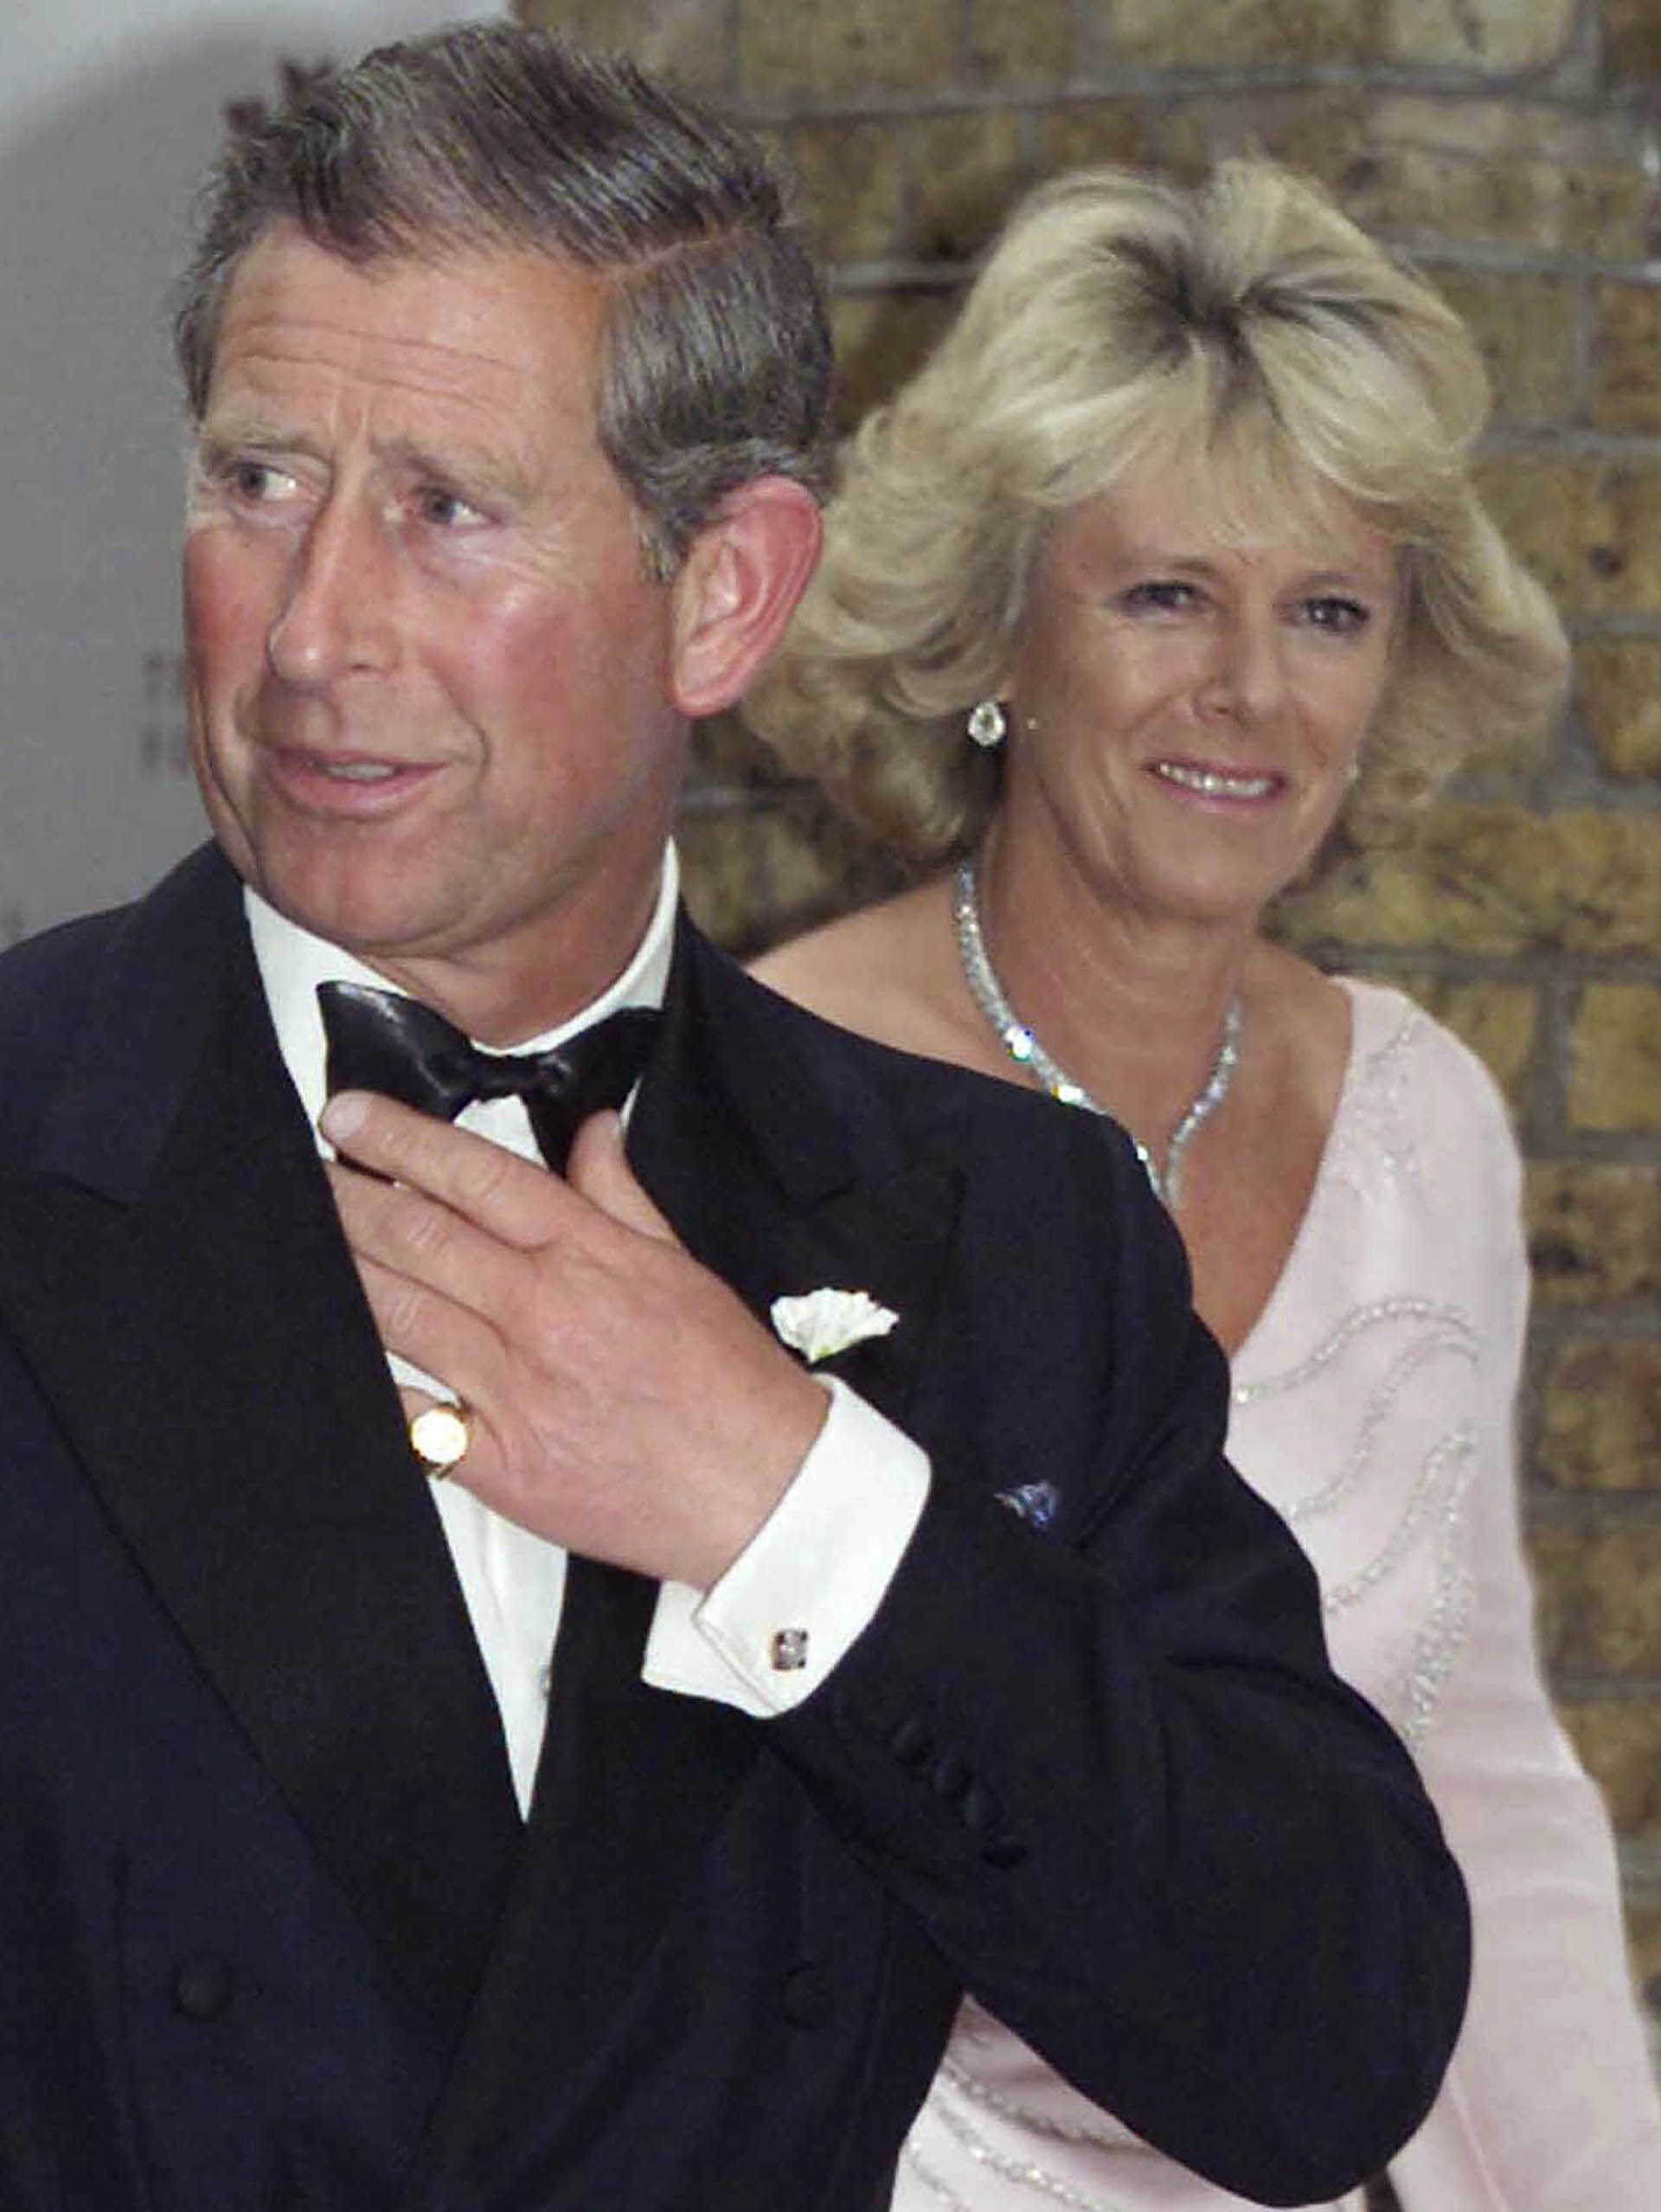 El príncipe Carlos llega con Camilla Parker Bowles a una función benéfica de la Fundación del Príncipe en el centro de Londres. (AP Photo/Alastair Grant, File)